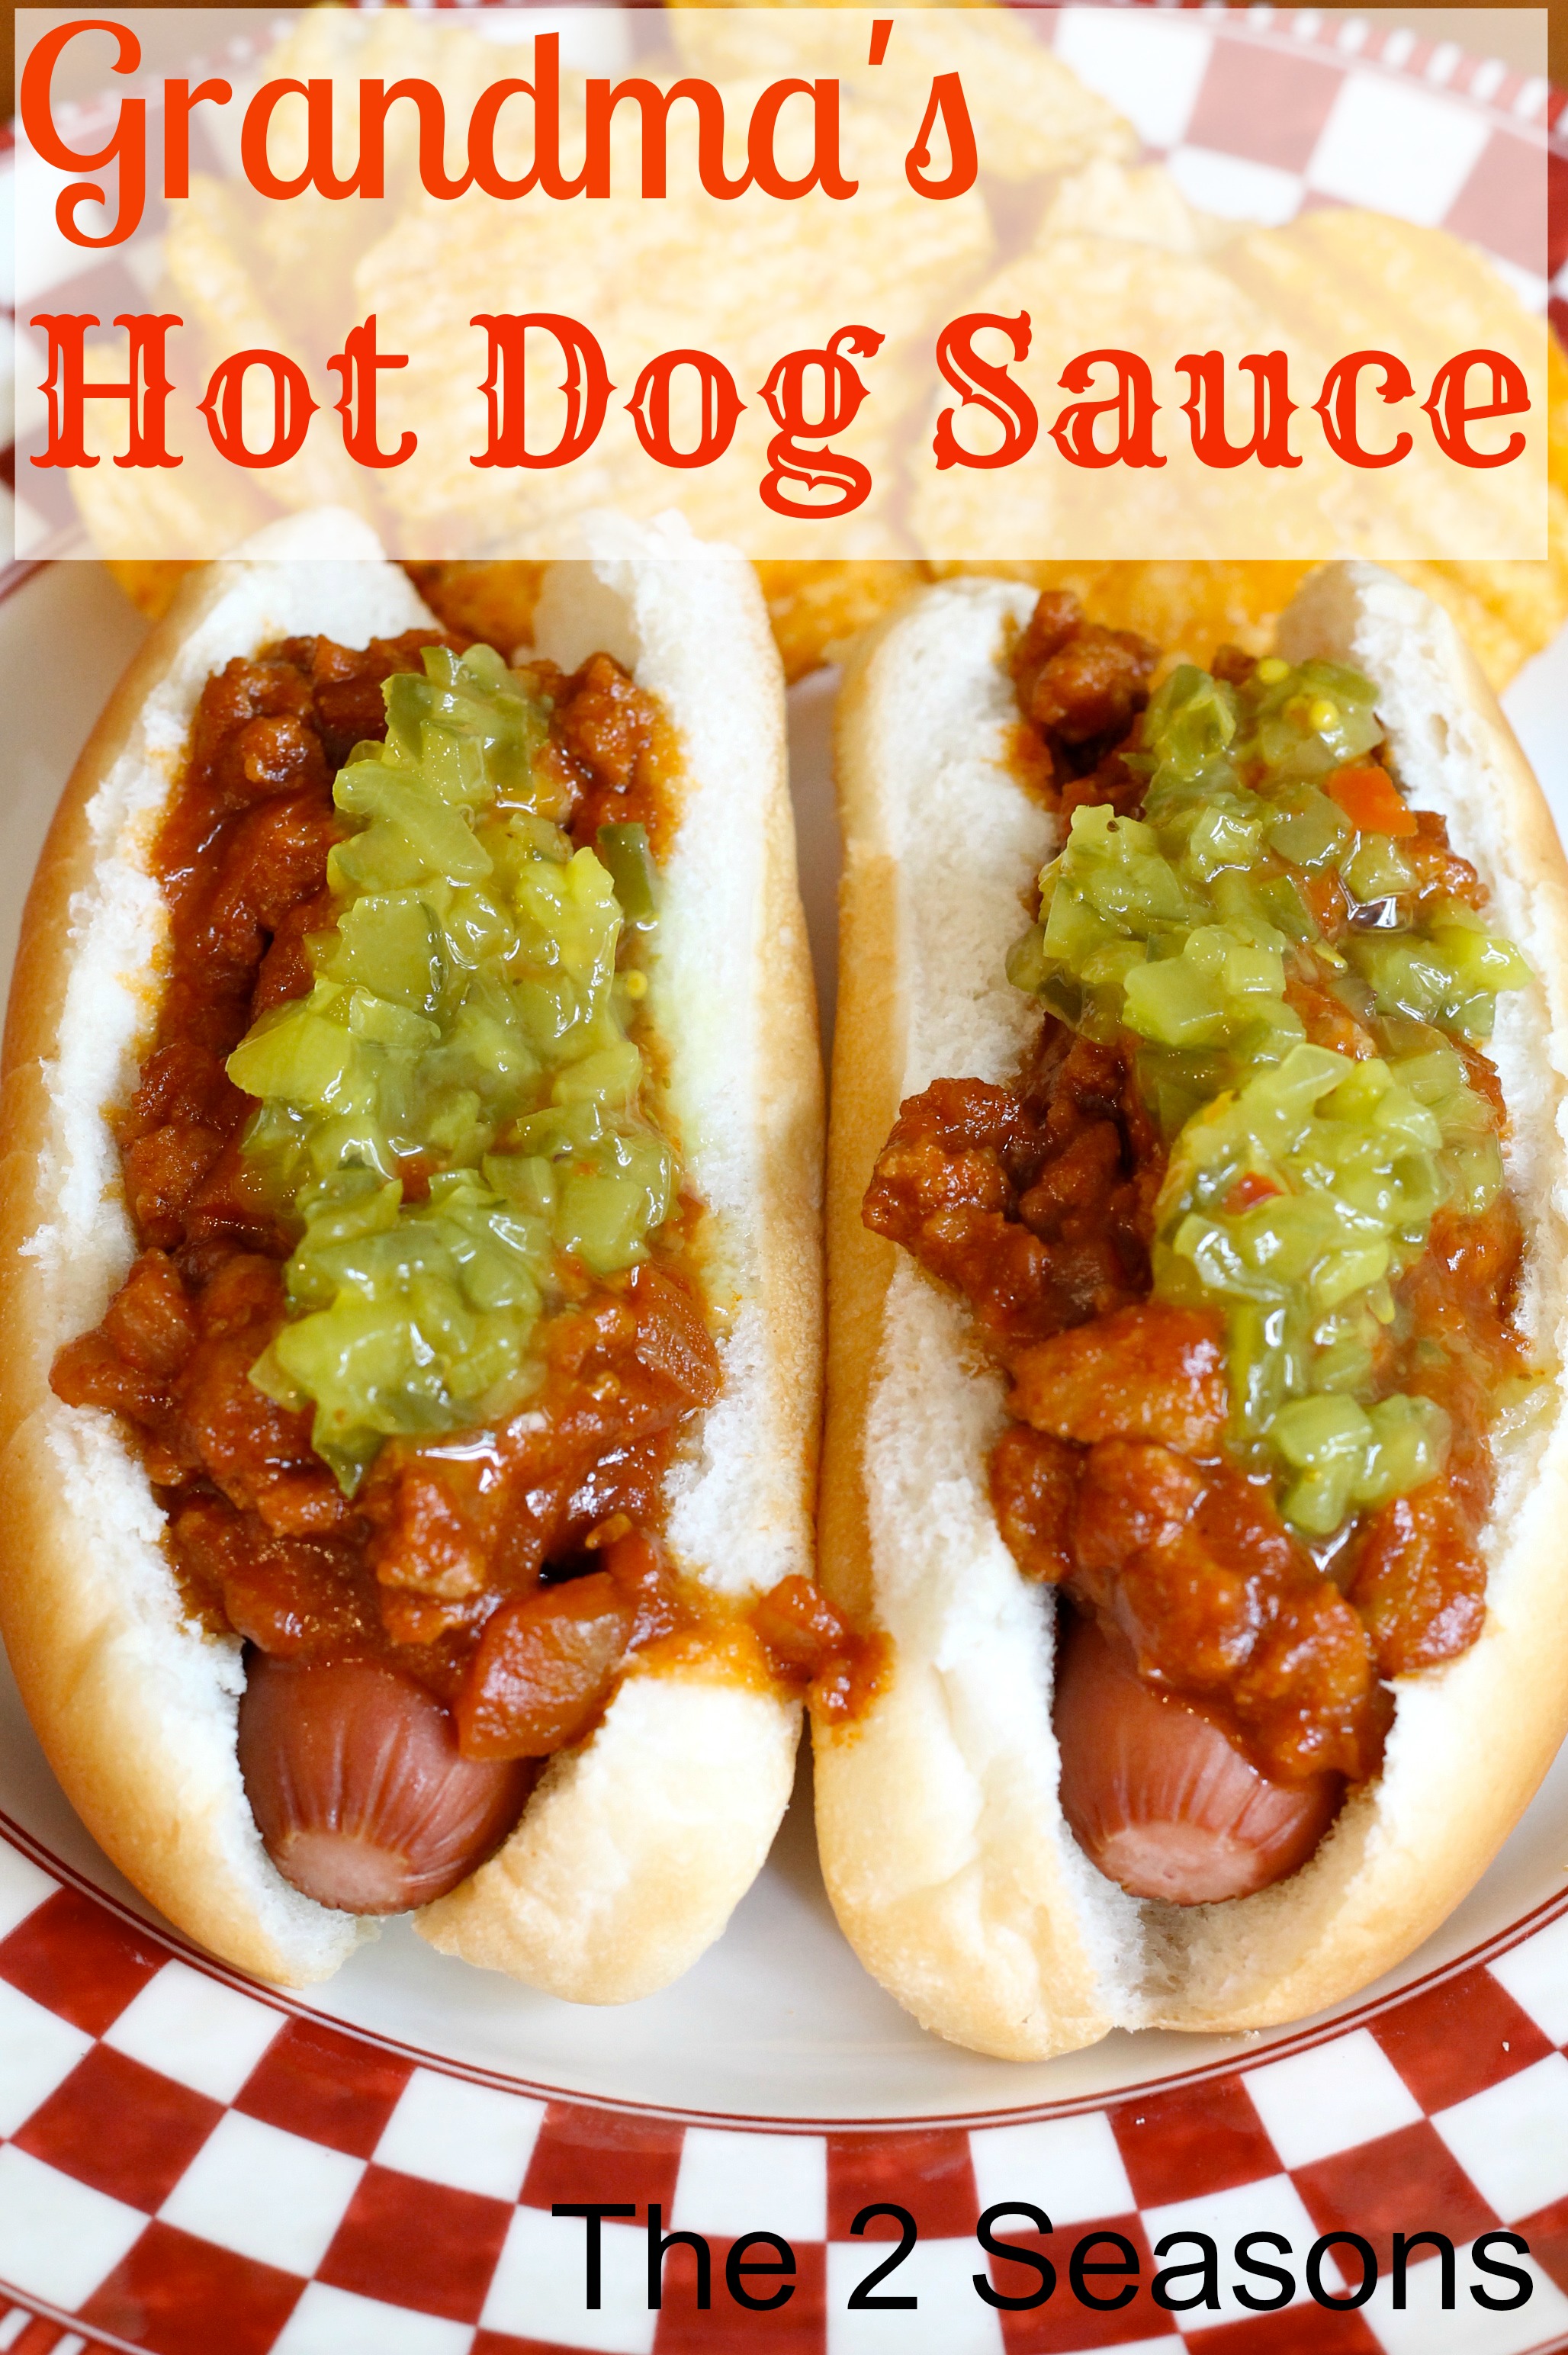 Hot Dog Sauce - Grandma's Hot Dog Sauce Recipe